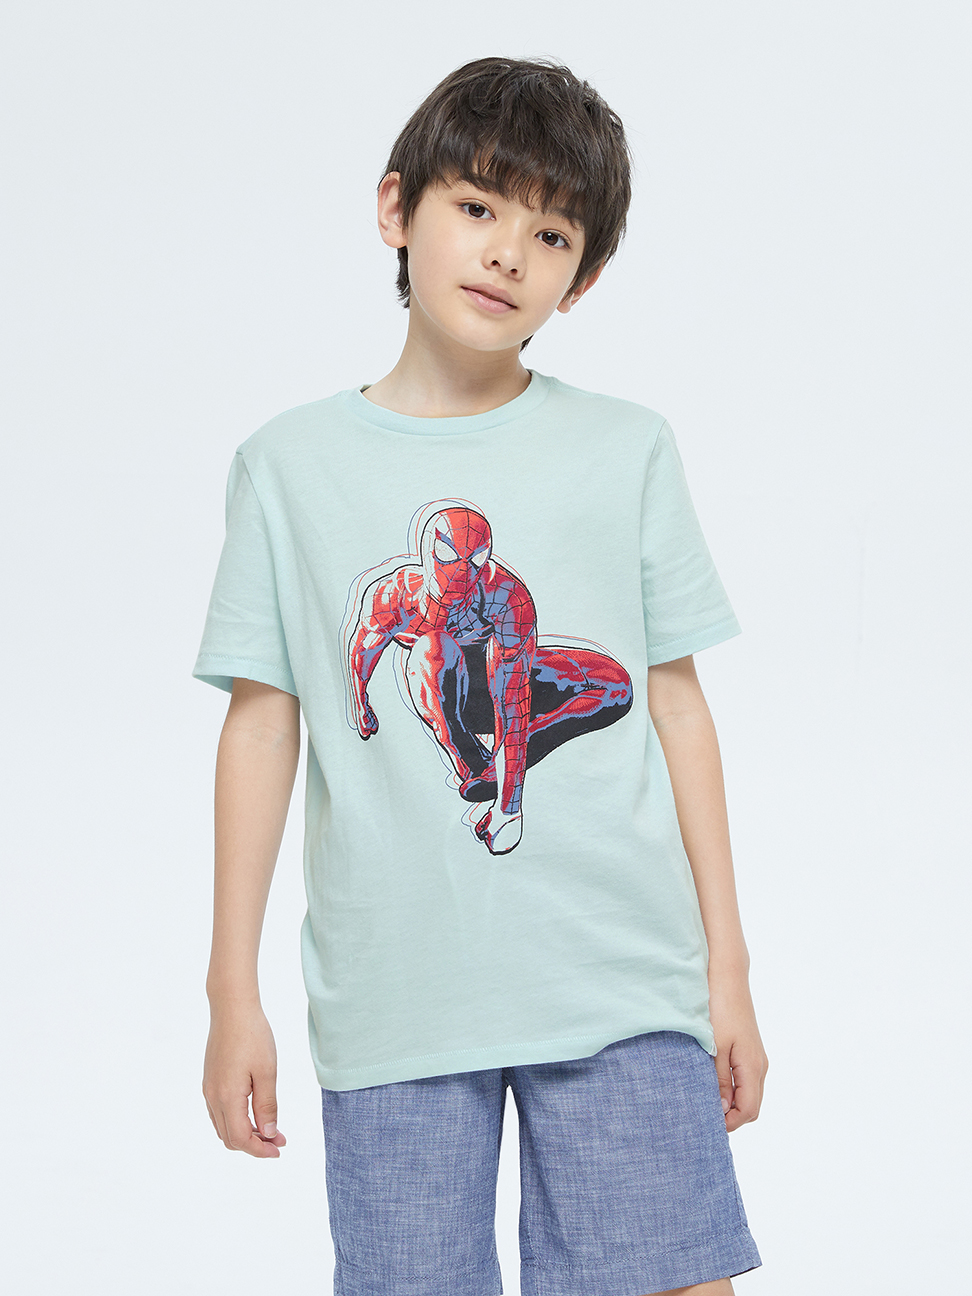 男童|Gap x Marvel 漫威系列純棉短袖T恤